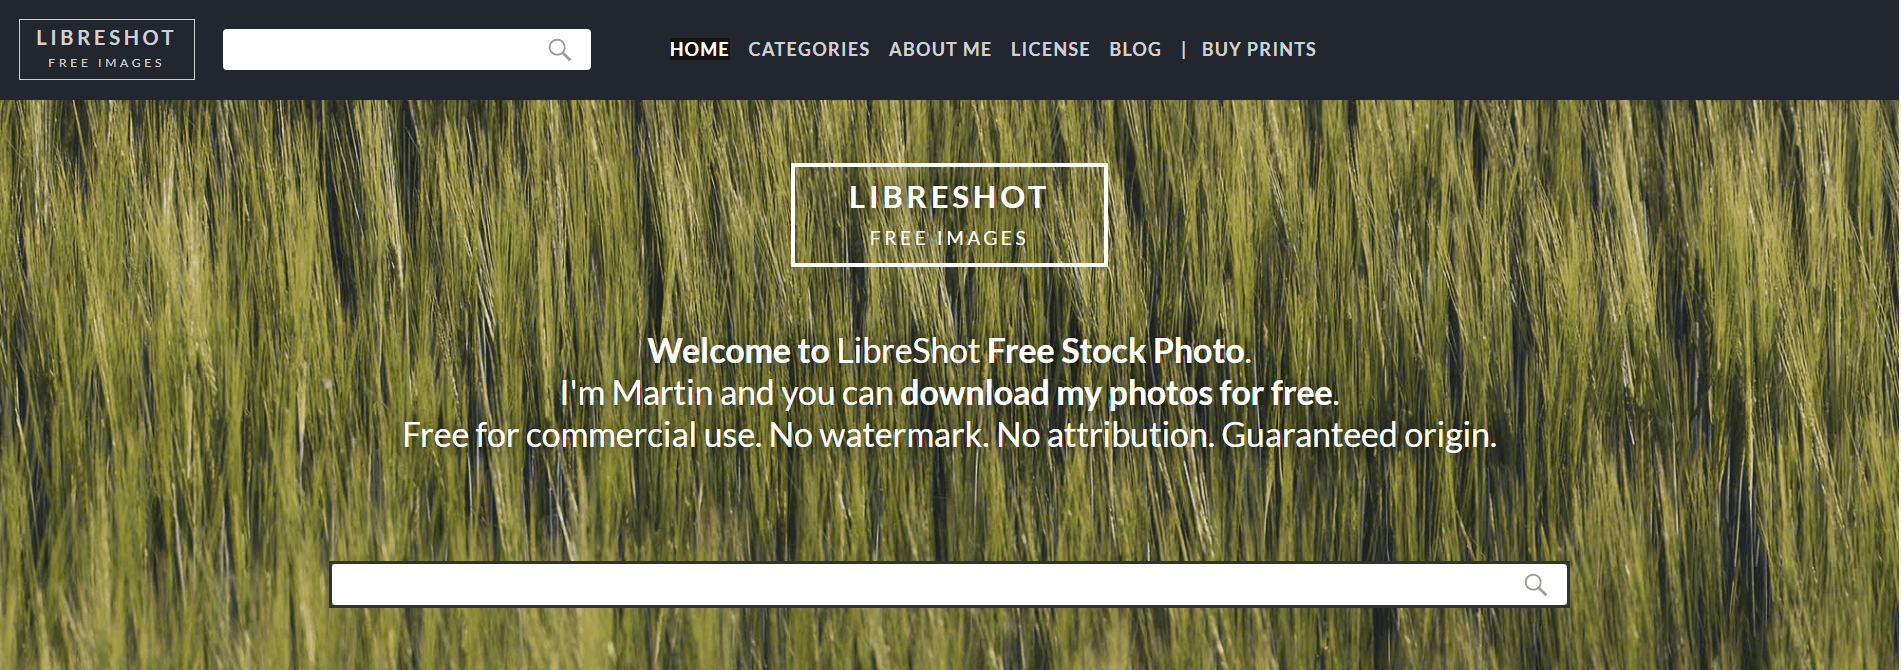 Libreshot